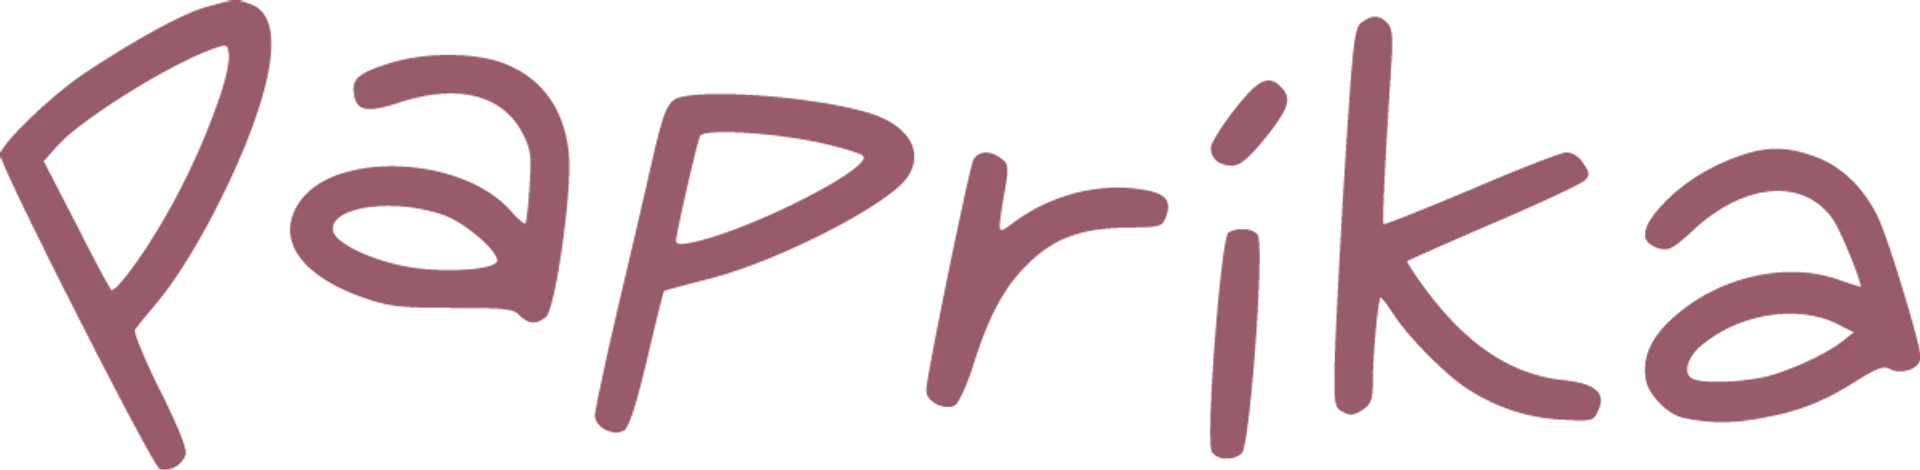 PAPRIKA logo